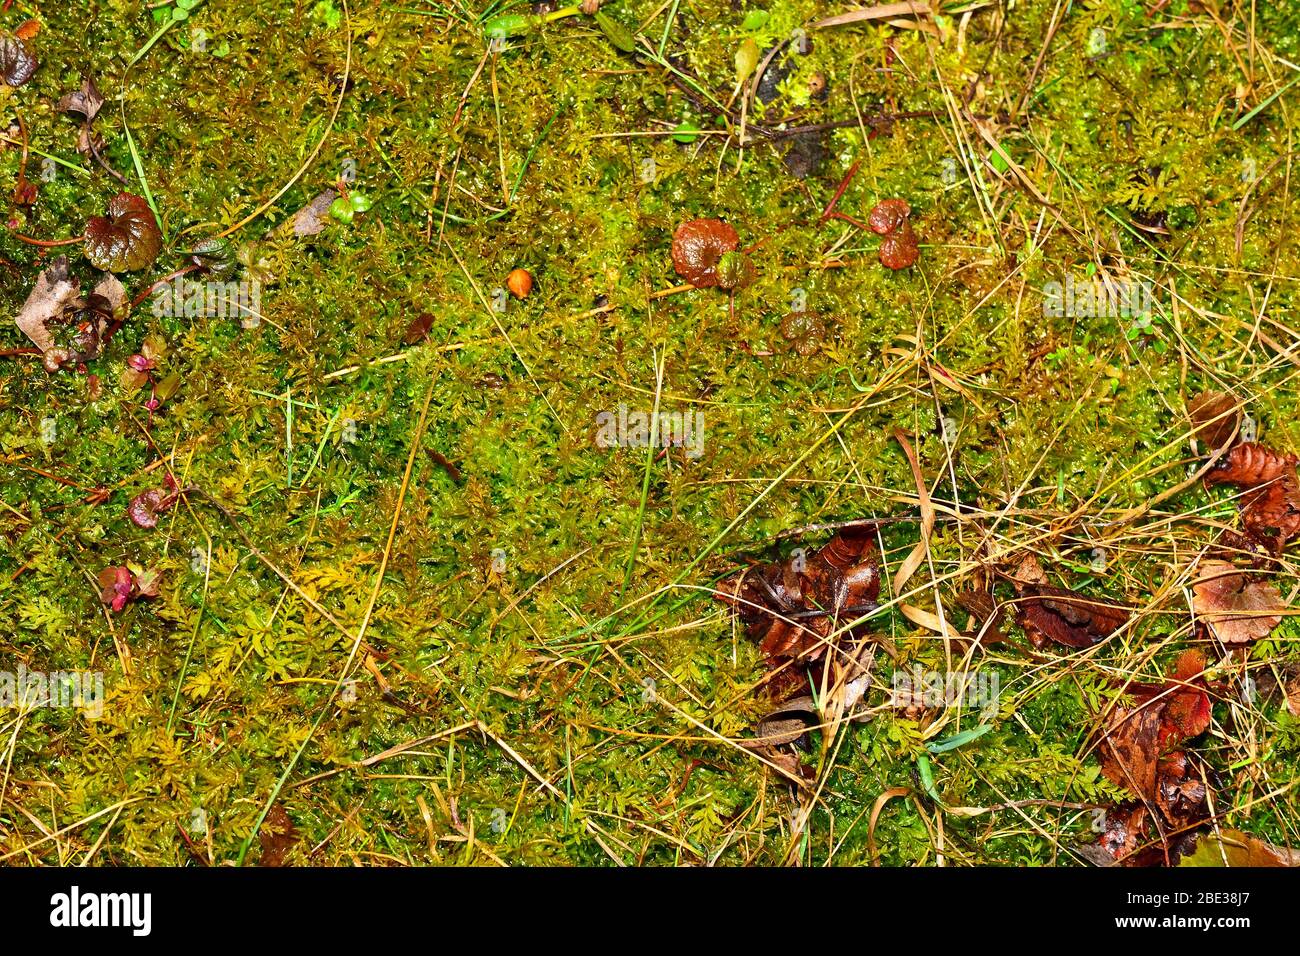 Nasses Gras und Moos Hintergrund. Muster des Gartengrunds. Hohe Luftfeuchtigkeit. Stockfoto